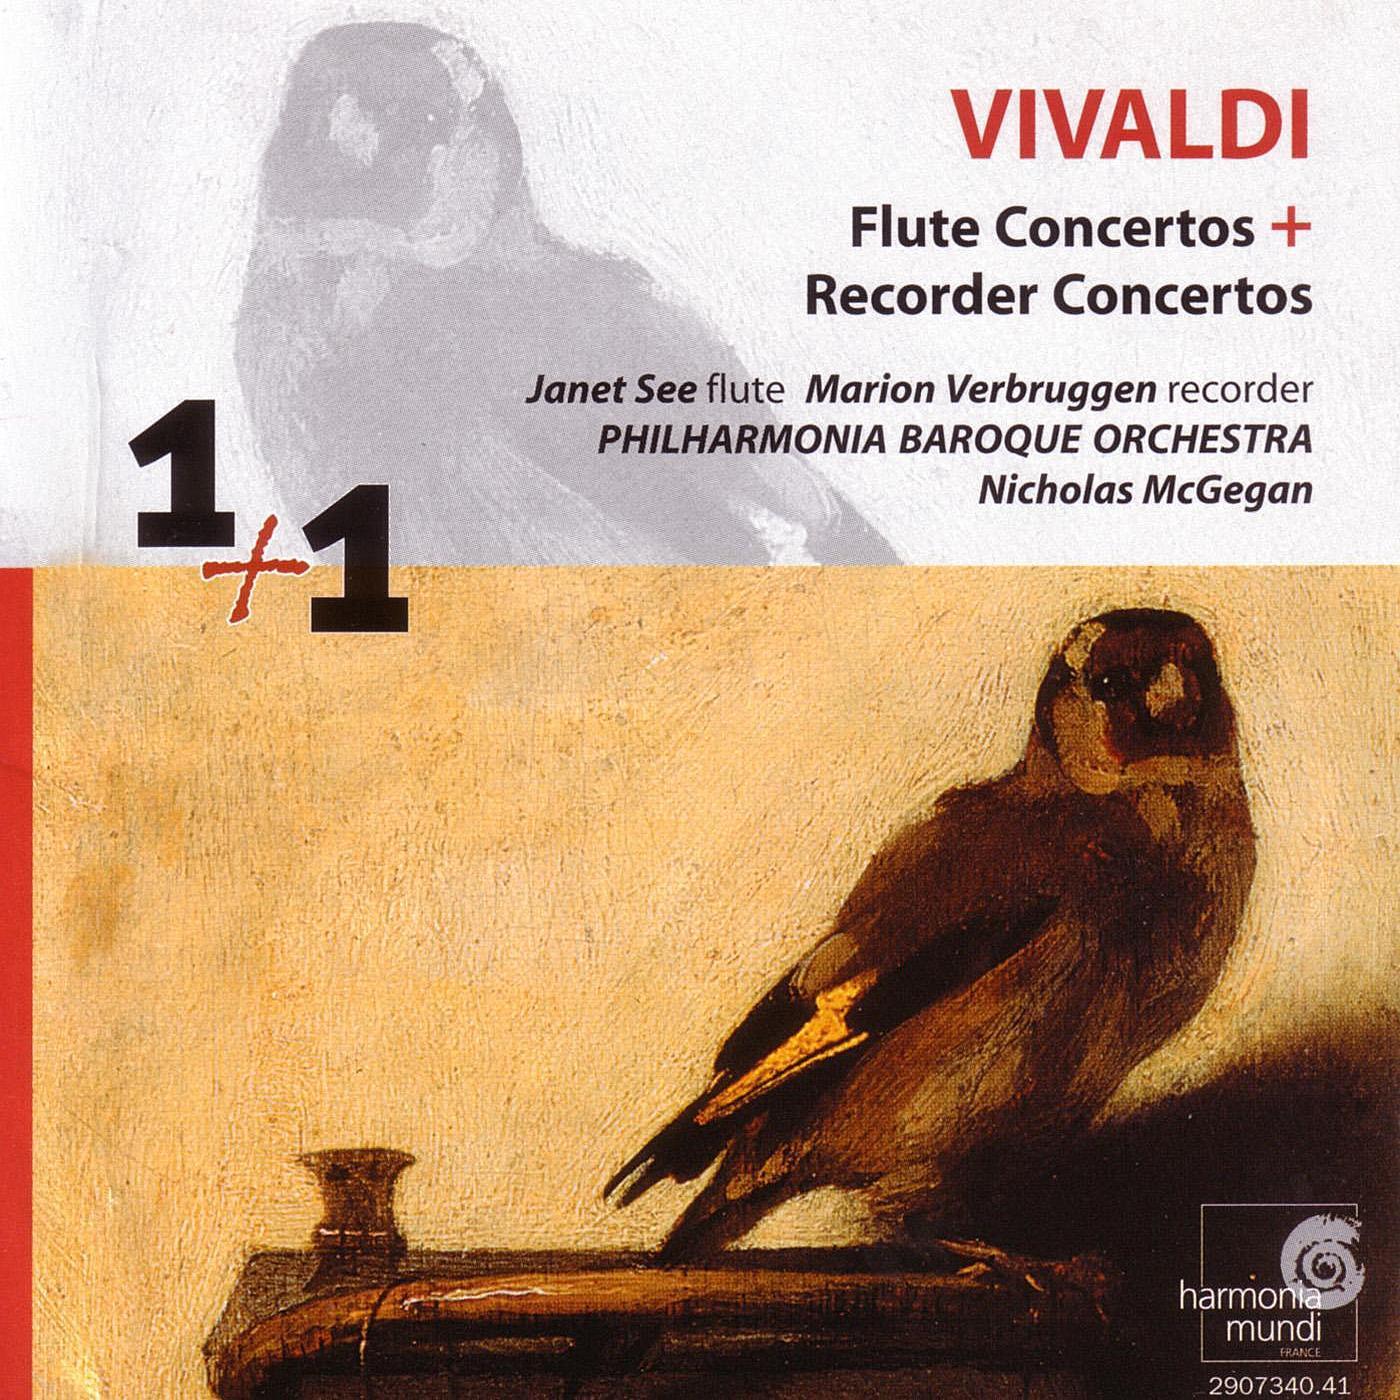 Flute Concerto in D Major, RV 429: Allegro - Andante - Allegro